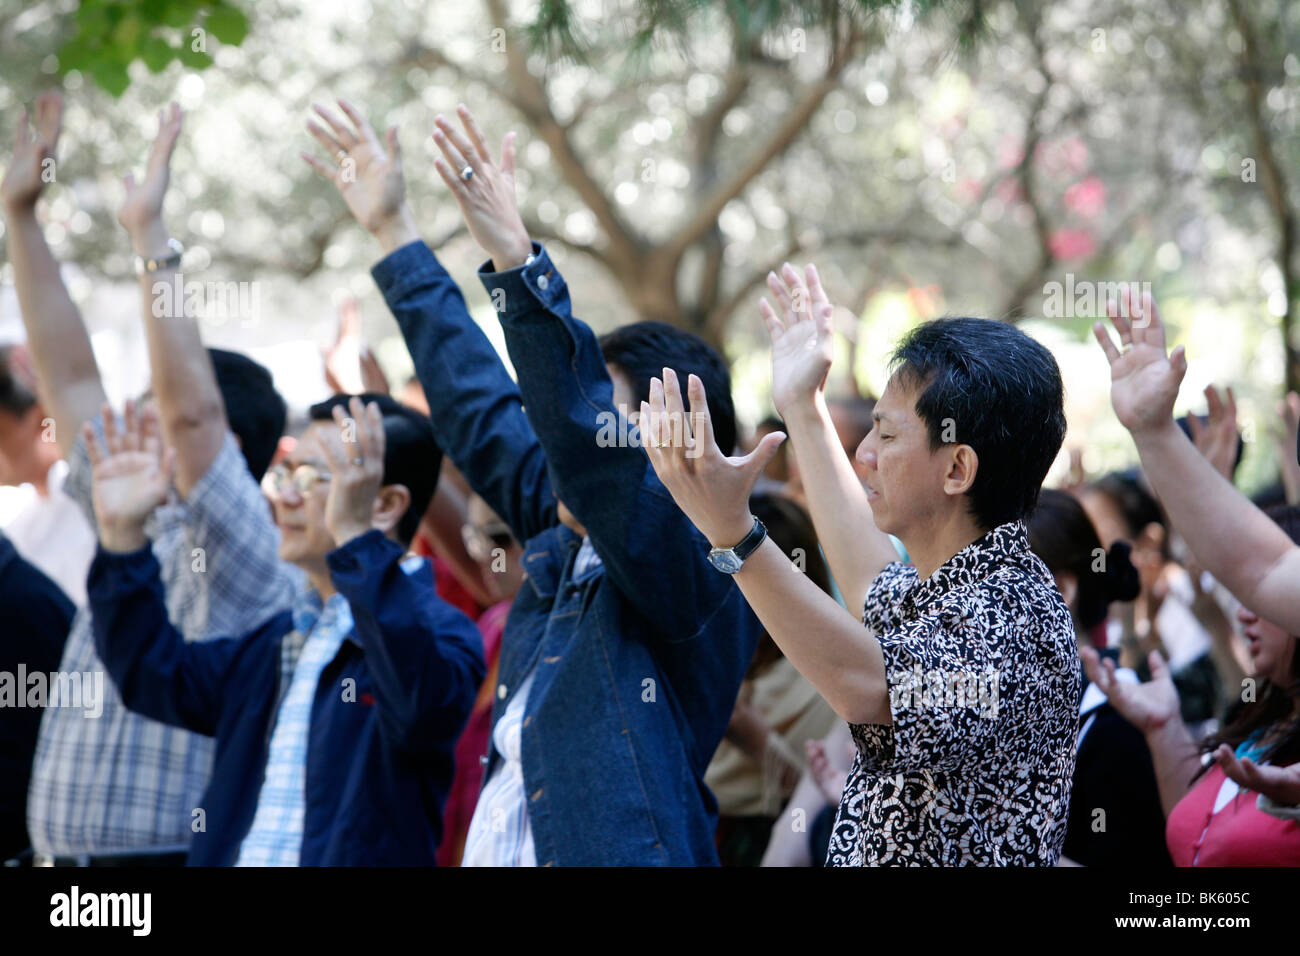 Los protestantes evangélicos orando en Jerusalén Garden Tomb, Jerusalem, Israel, Oriente Medio Foto de stock